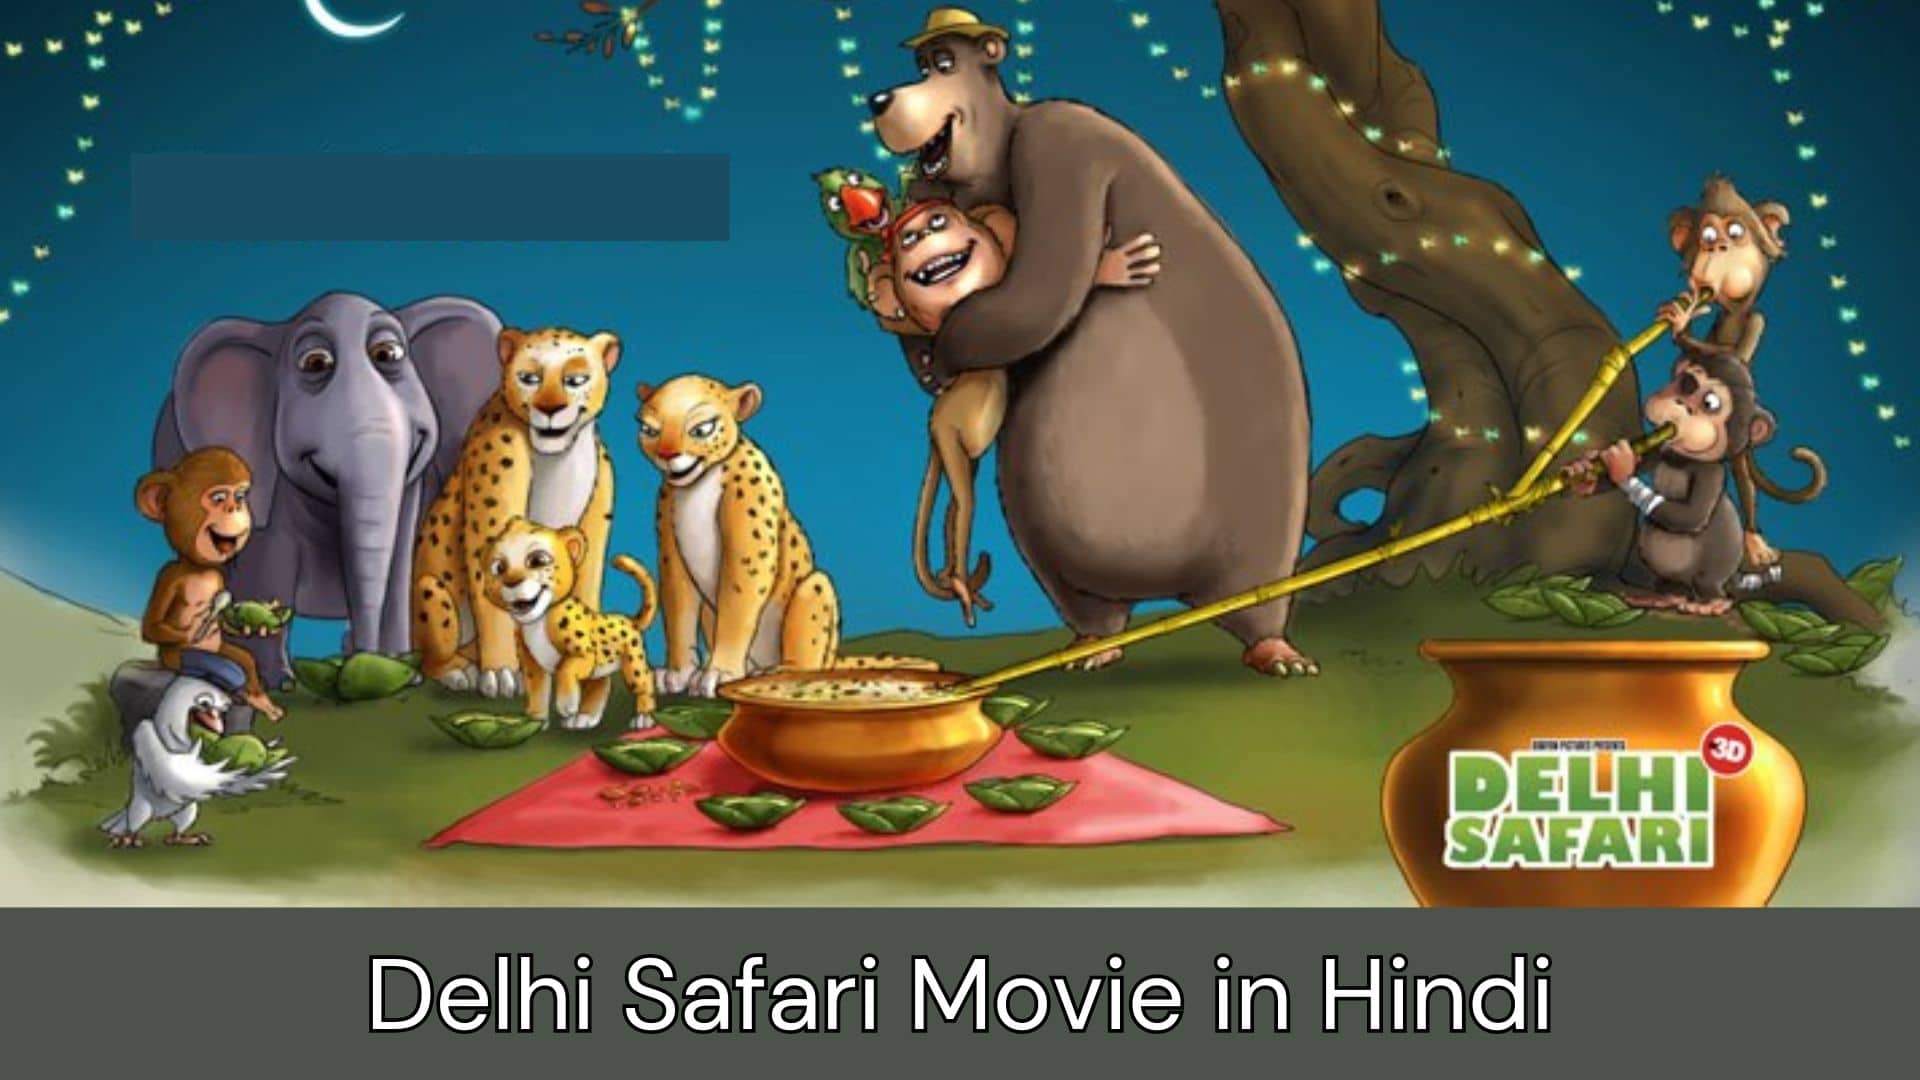 Delhi Safari Movie Where to Watch, Review, Ott